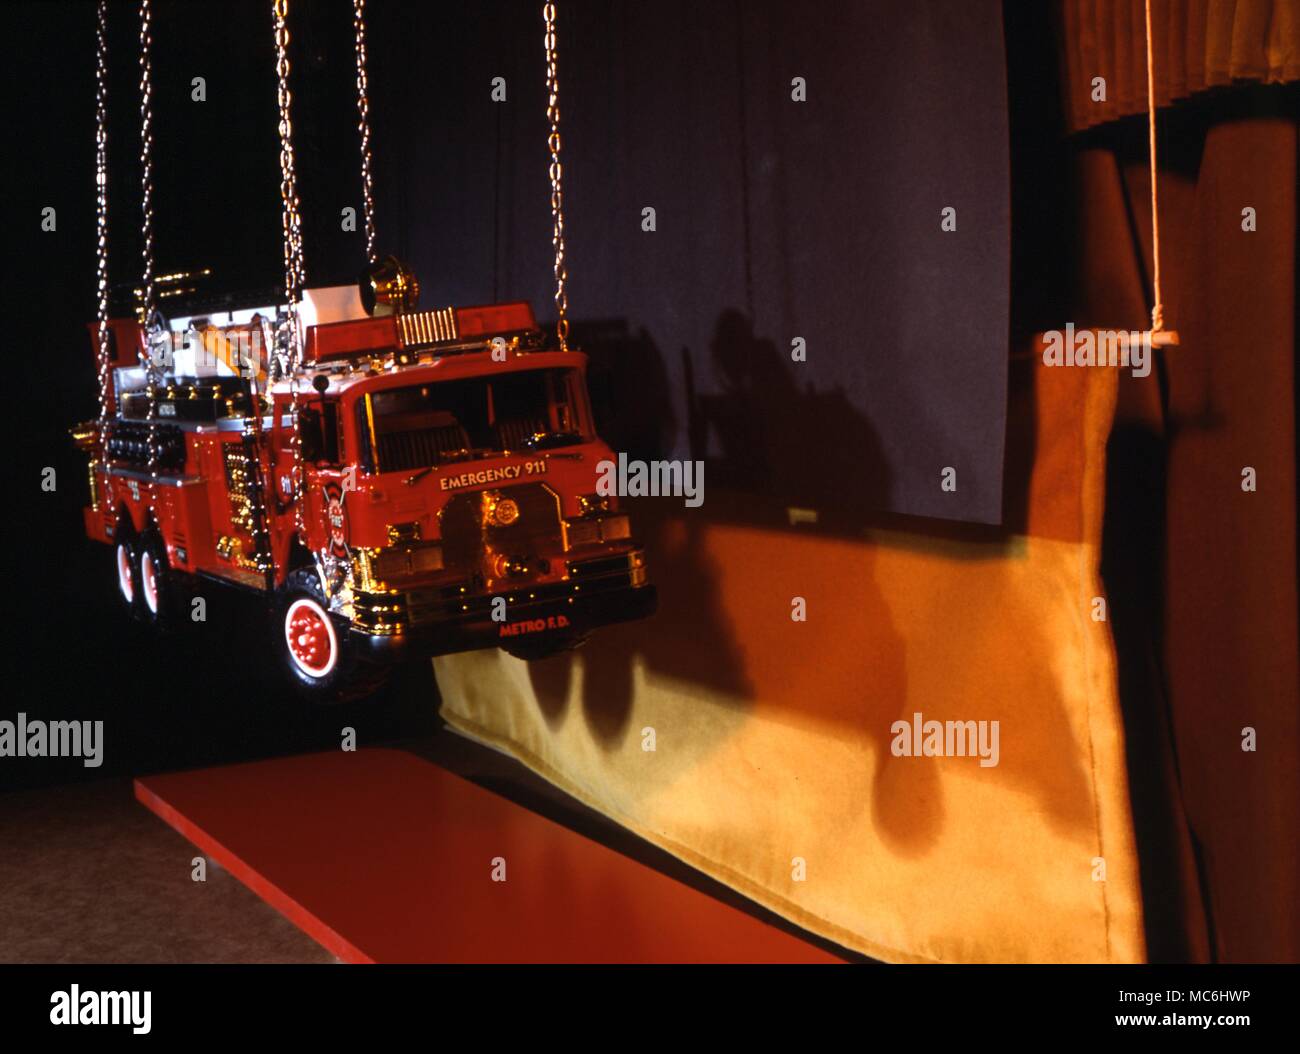 Verschwinden Fire Engine Trick. Dieses Bild zeigt, was der Magier sieht - Der schwarze Vorhang versteckt, in dem die Feuerwehr mit einem Kran angehoben werden. Stockfoto